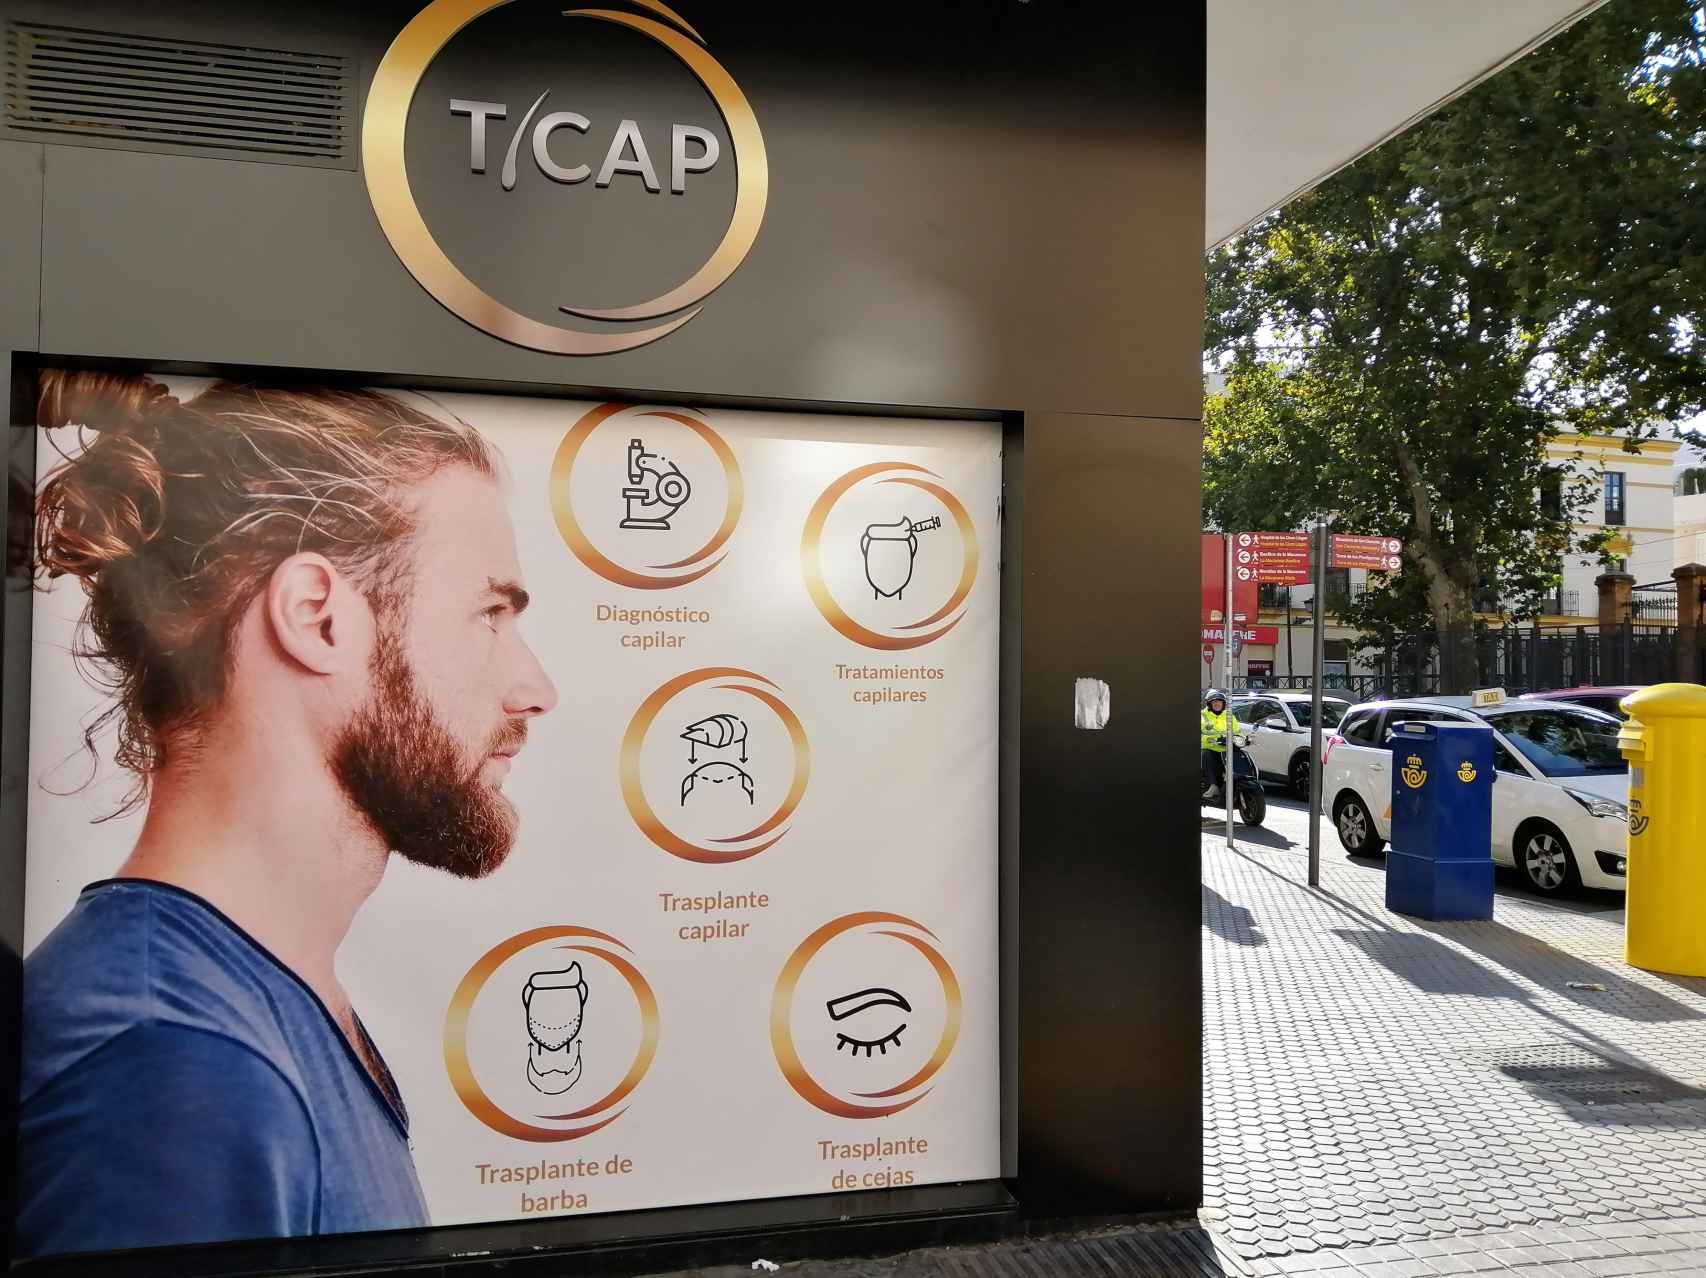 Anuncio de trasplantes capilares, entre ellos de barba, en la clínica Ticap de Sevilla.